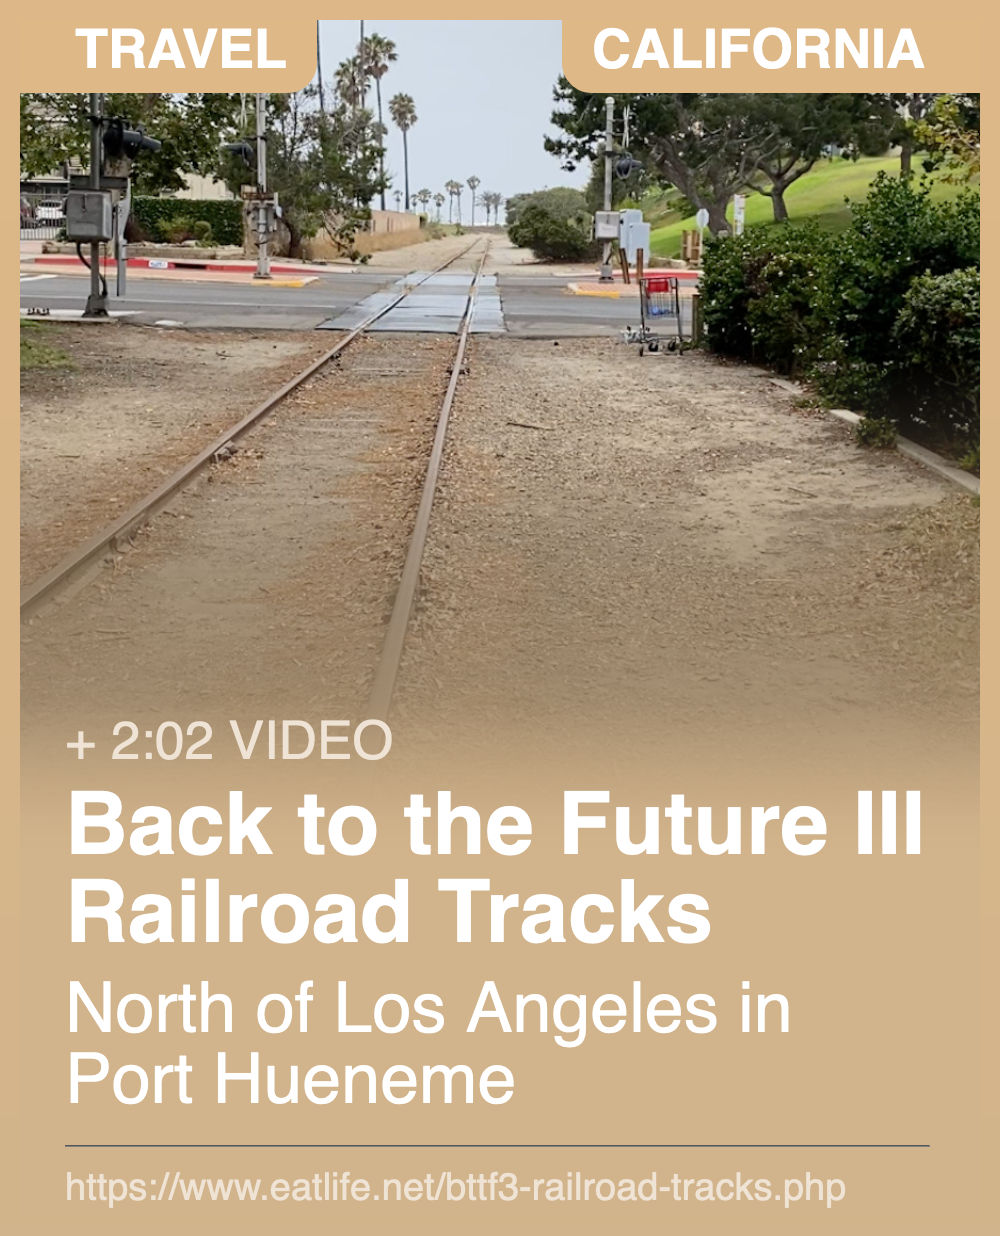 BTTF3 Railroad Tracks